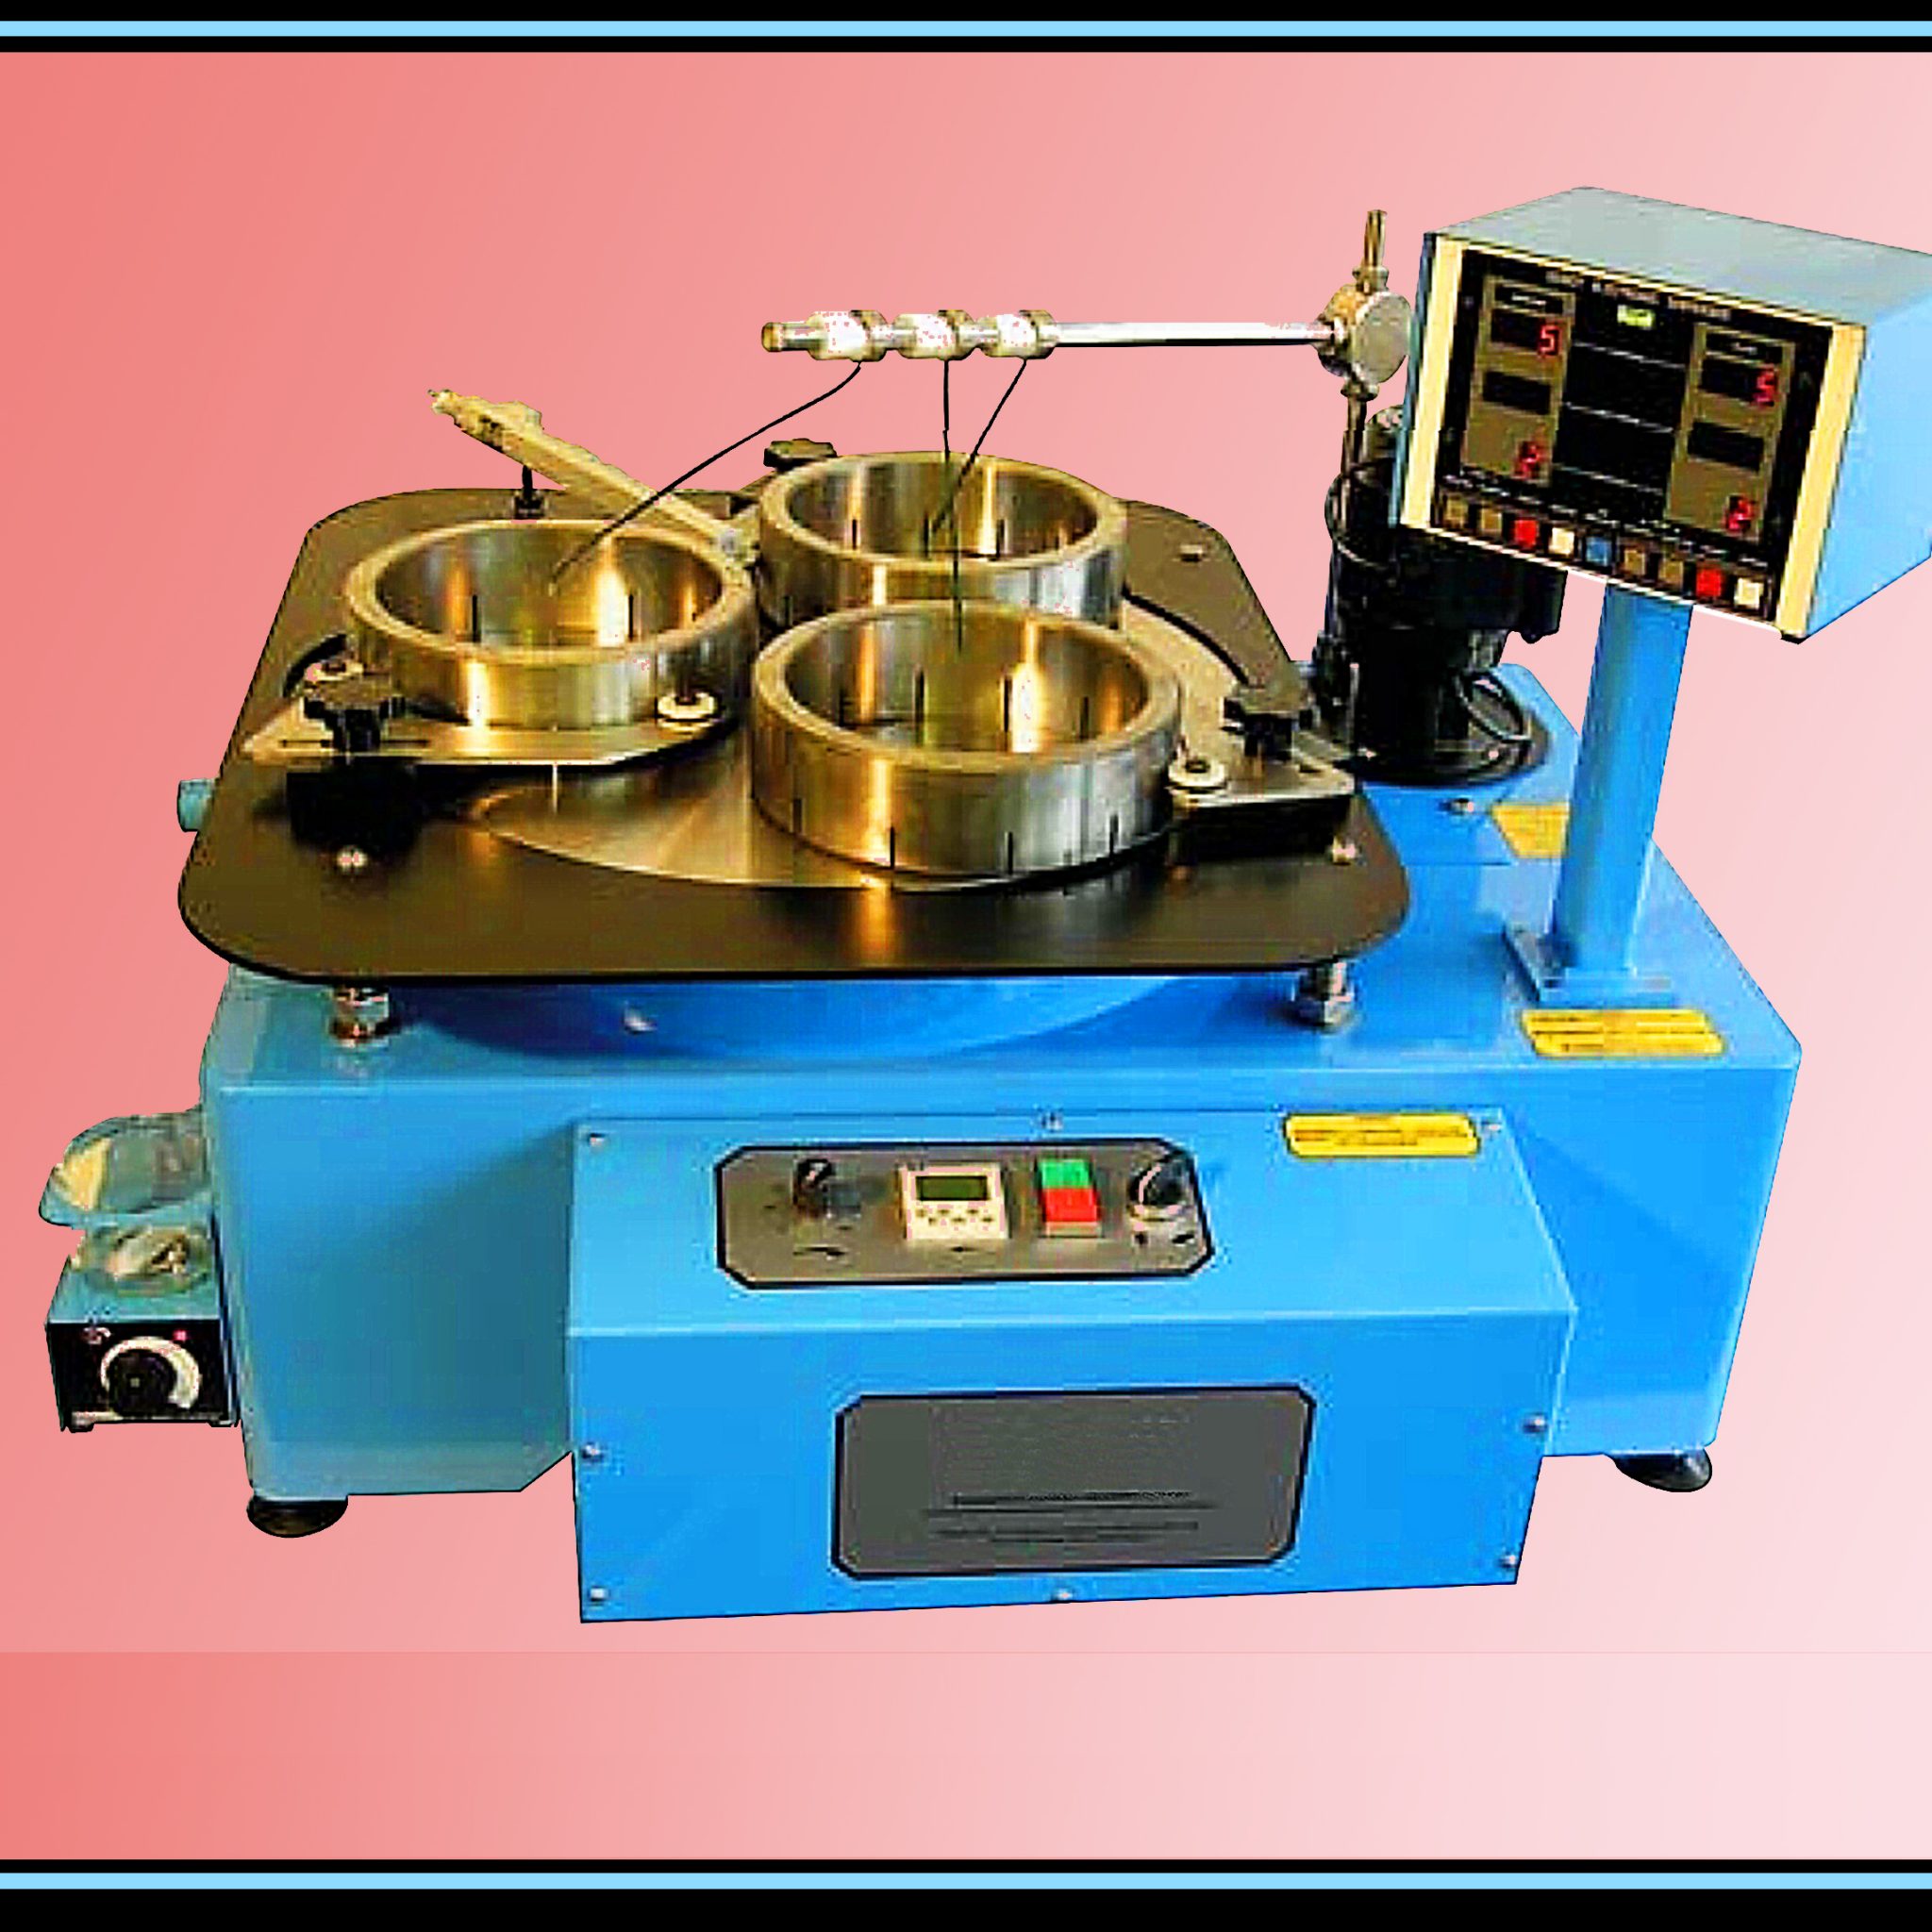 Machine die het lepwerk automatisch verricht, waaronder de toevoer van de diamantemulsie, nodig voor het glans-leppen van de werkstukken.